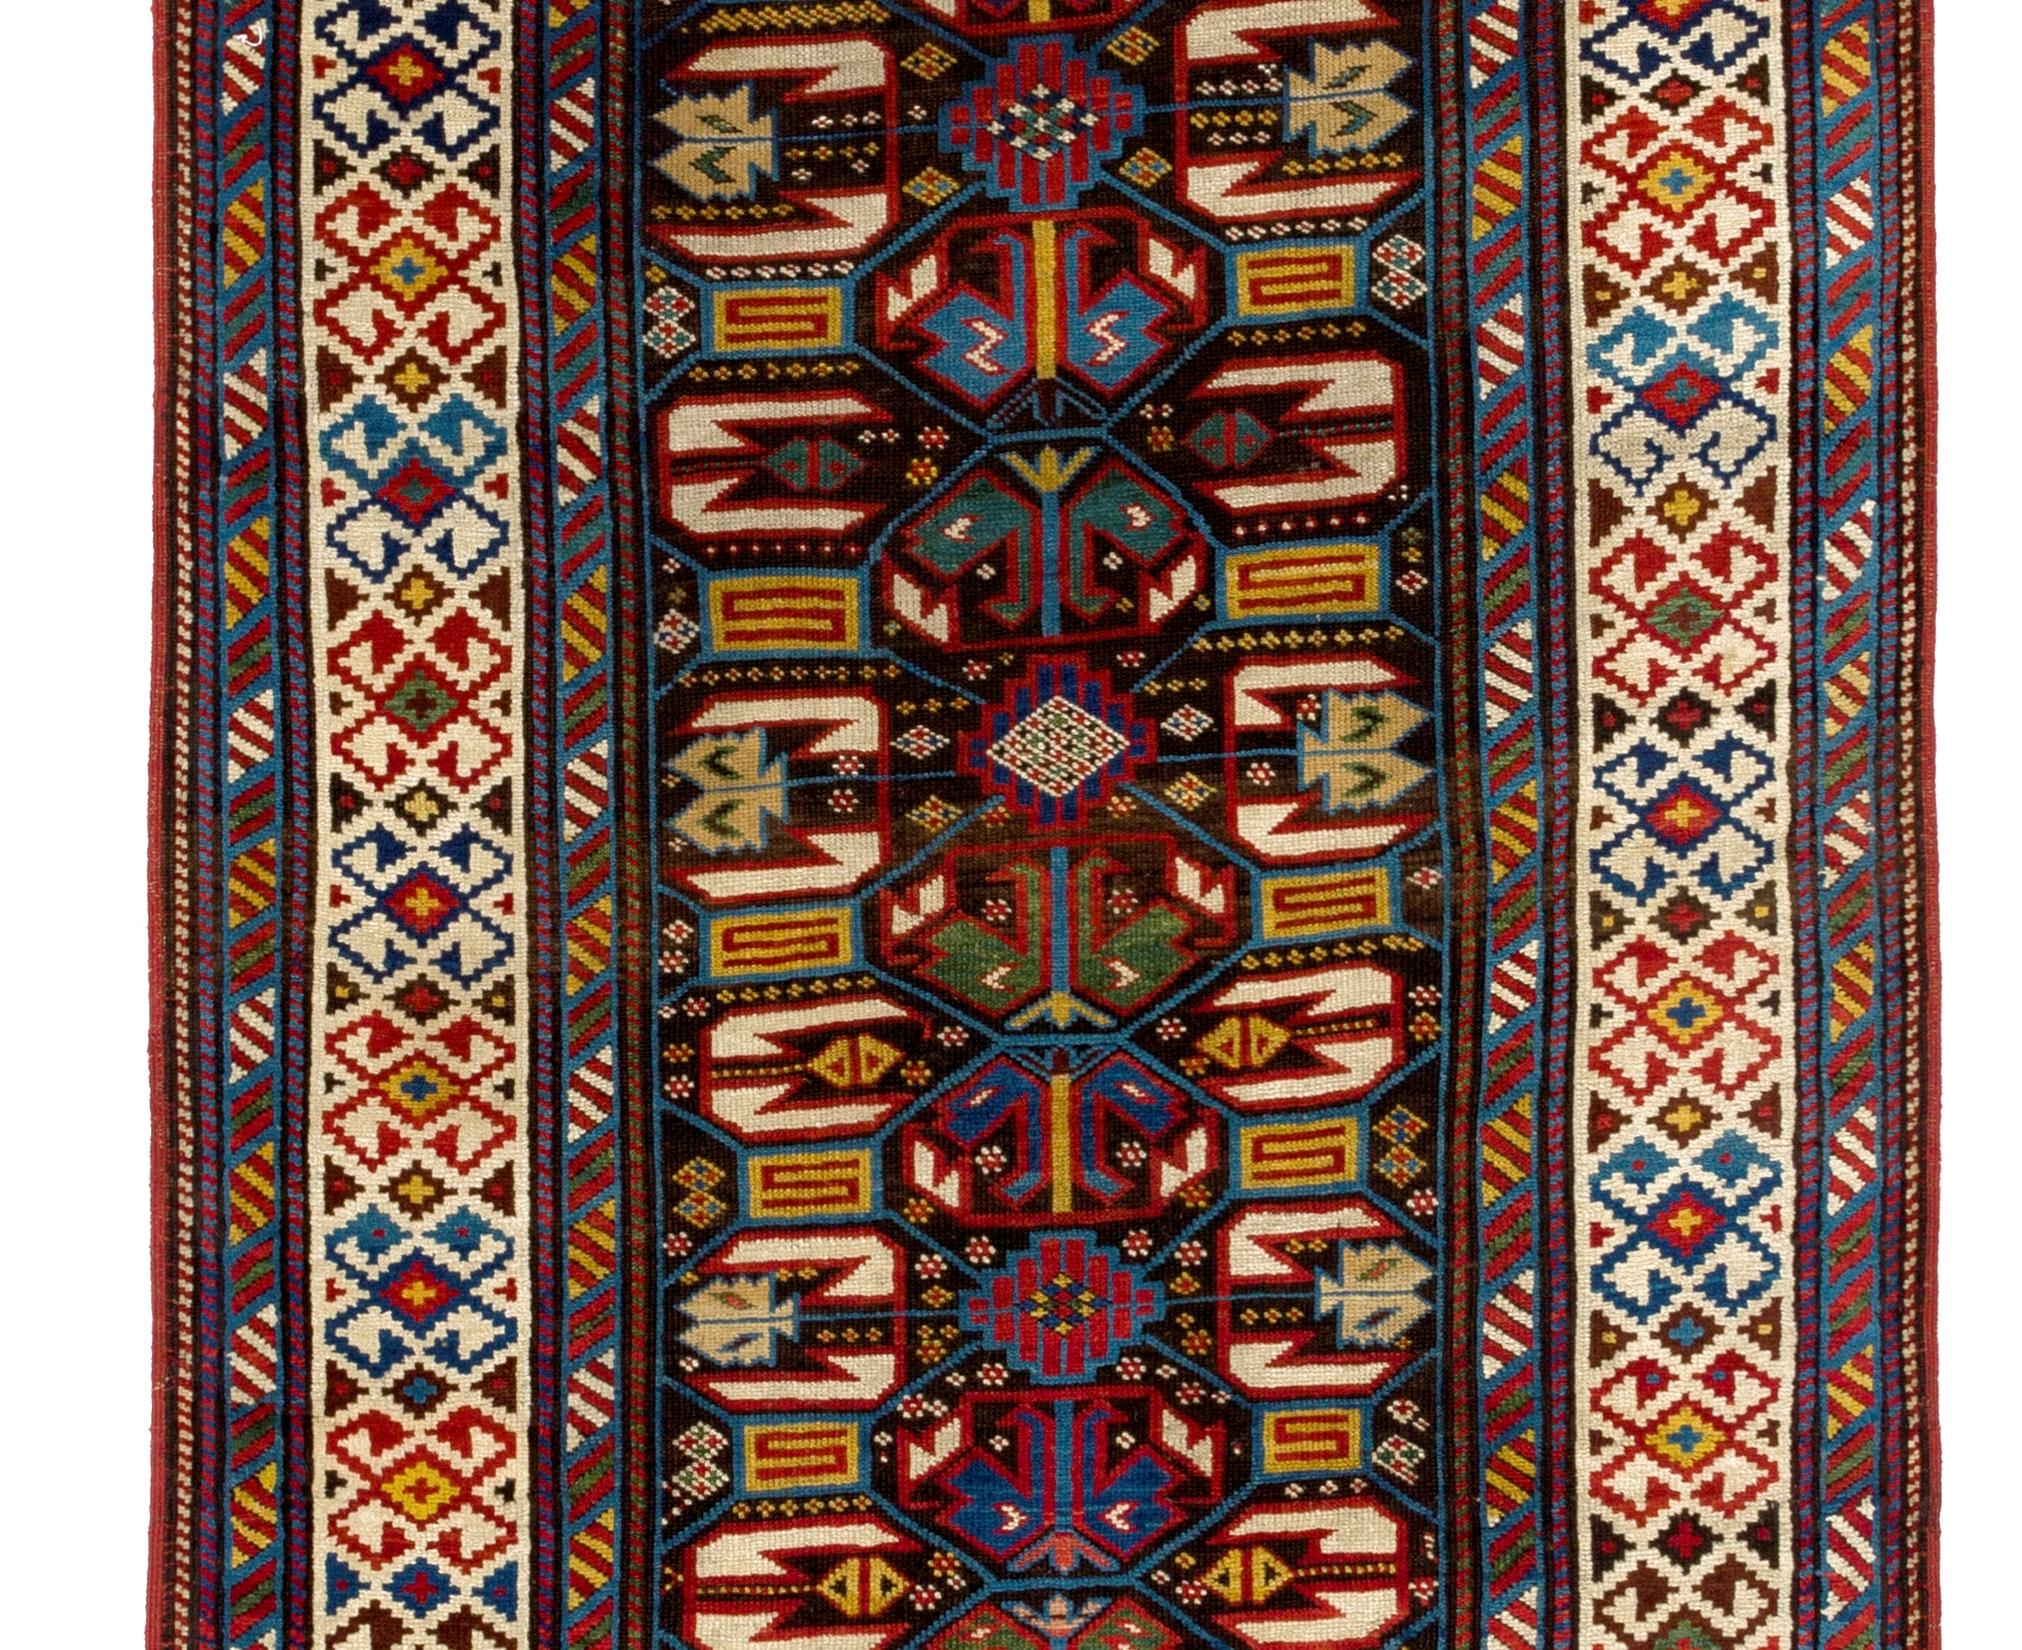 Antiker kaukasischer Kuba-Läufer aus Dagestan. Oberes Regal Sammlerteppich, um 1870
Nur Wolle und natürliche Farbstoffe. Sehr guter Zustand.